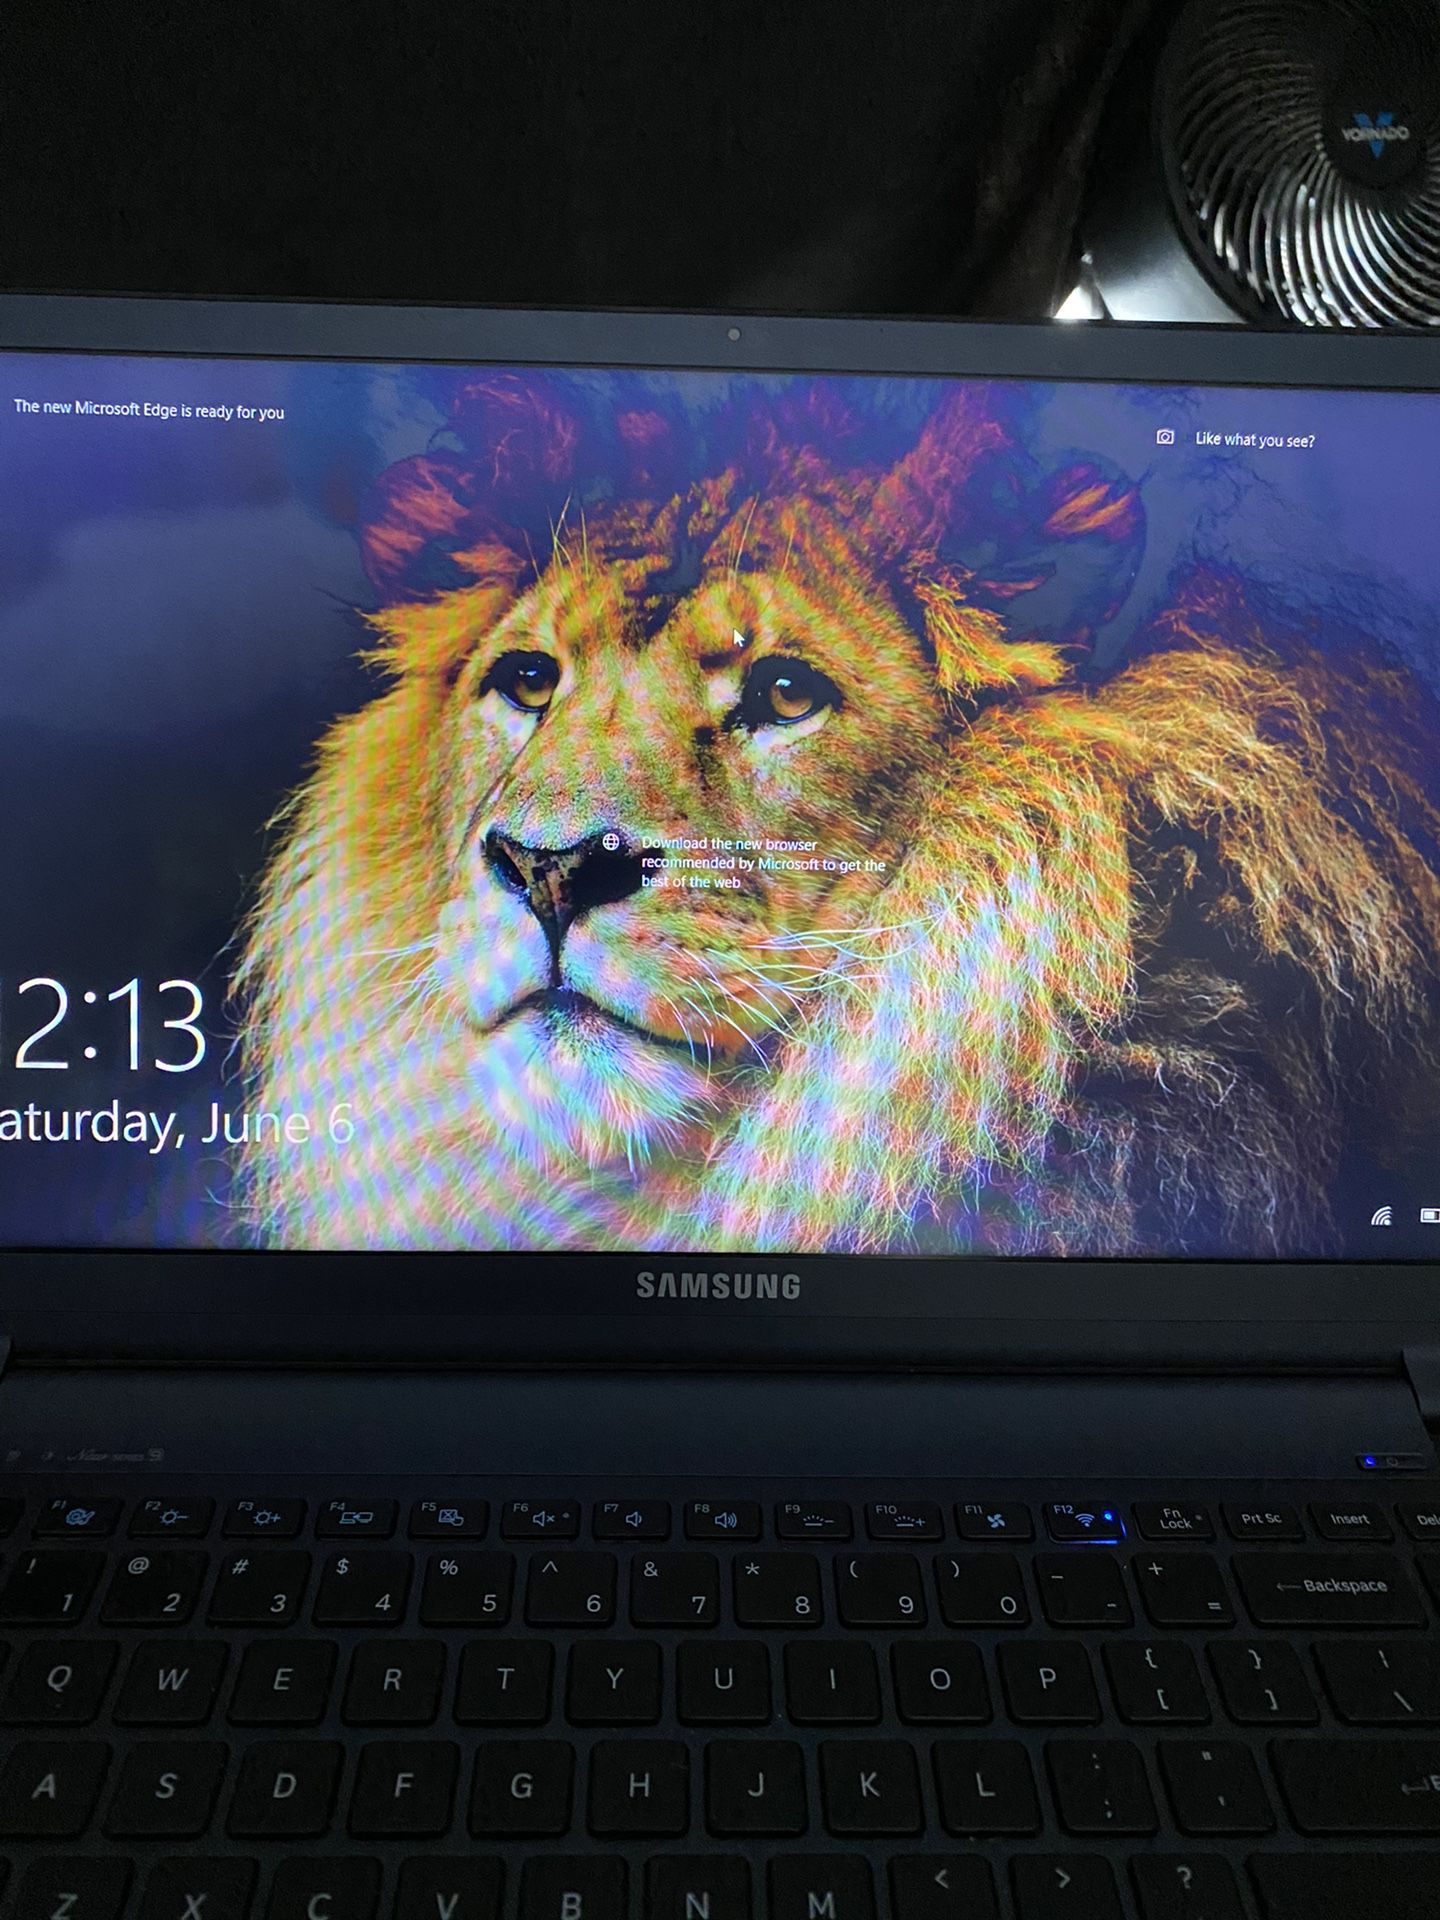 Samsung Notebook 9 NP900X5J i7-7500U 8GB 256GB SSD 15-inch 1920x1080 Windows 10 Ultra Thin Laptop